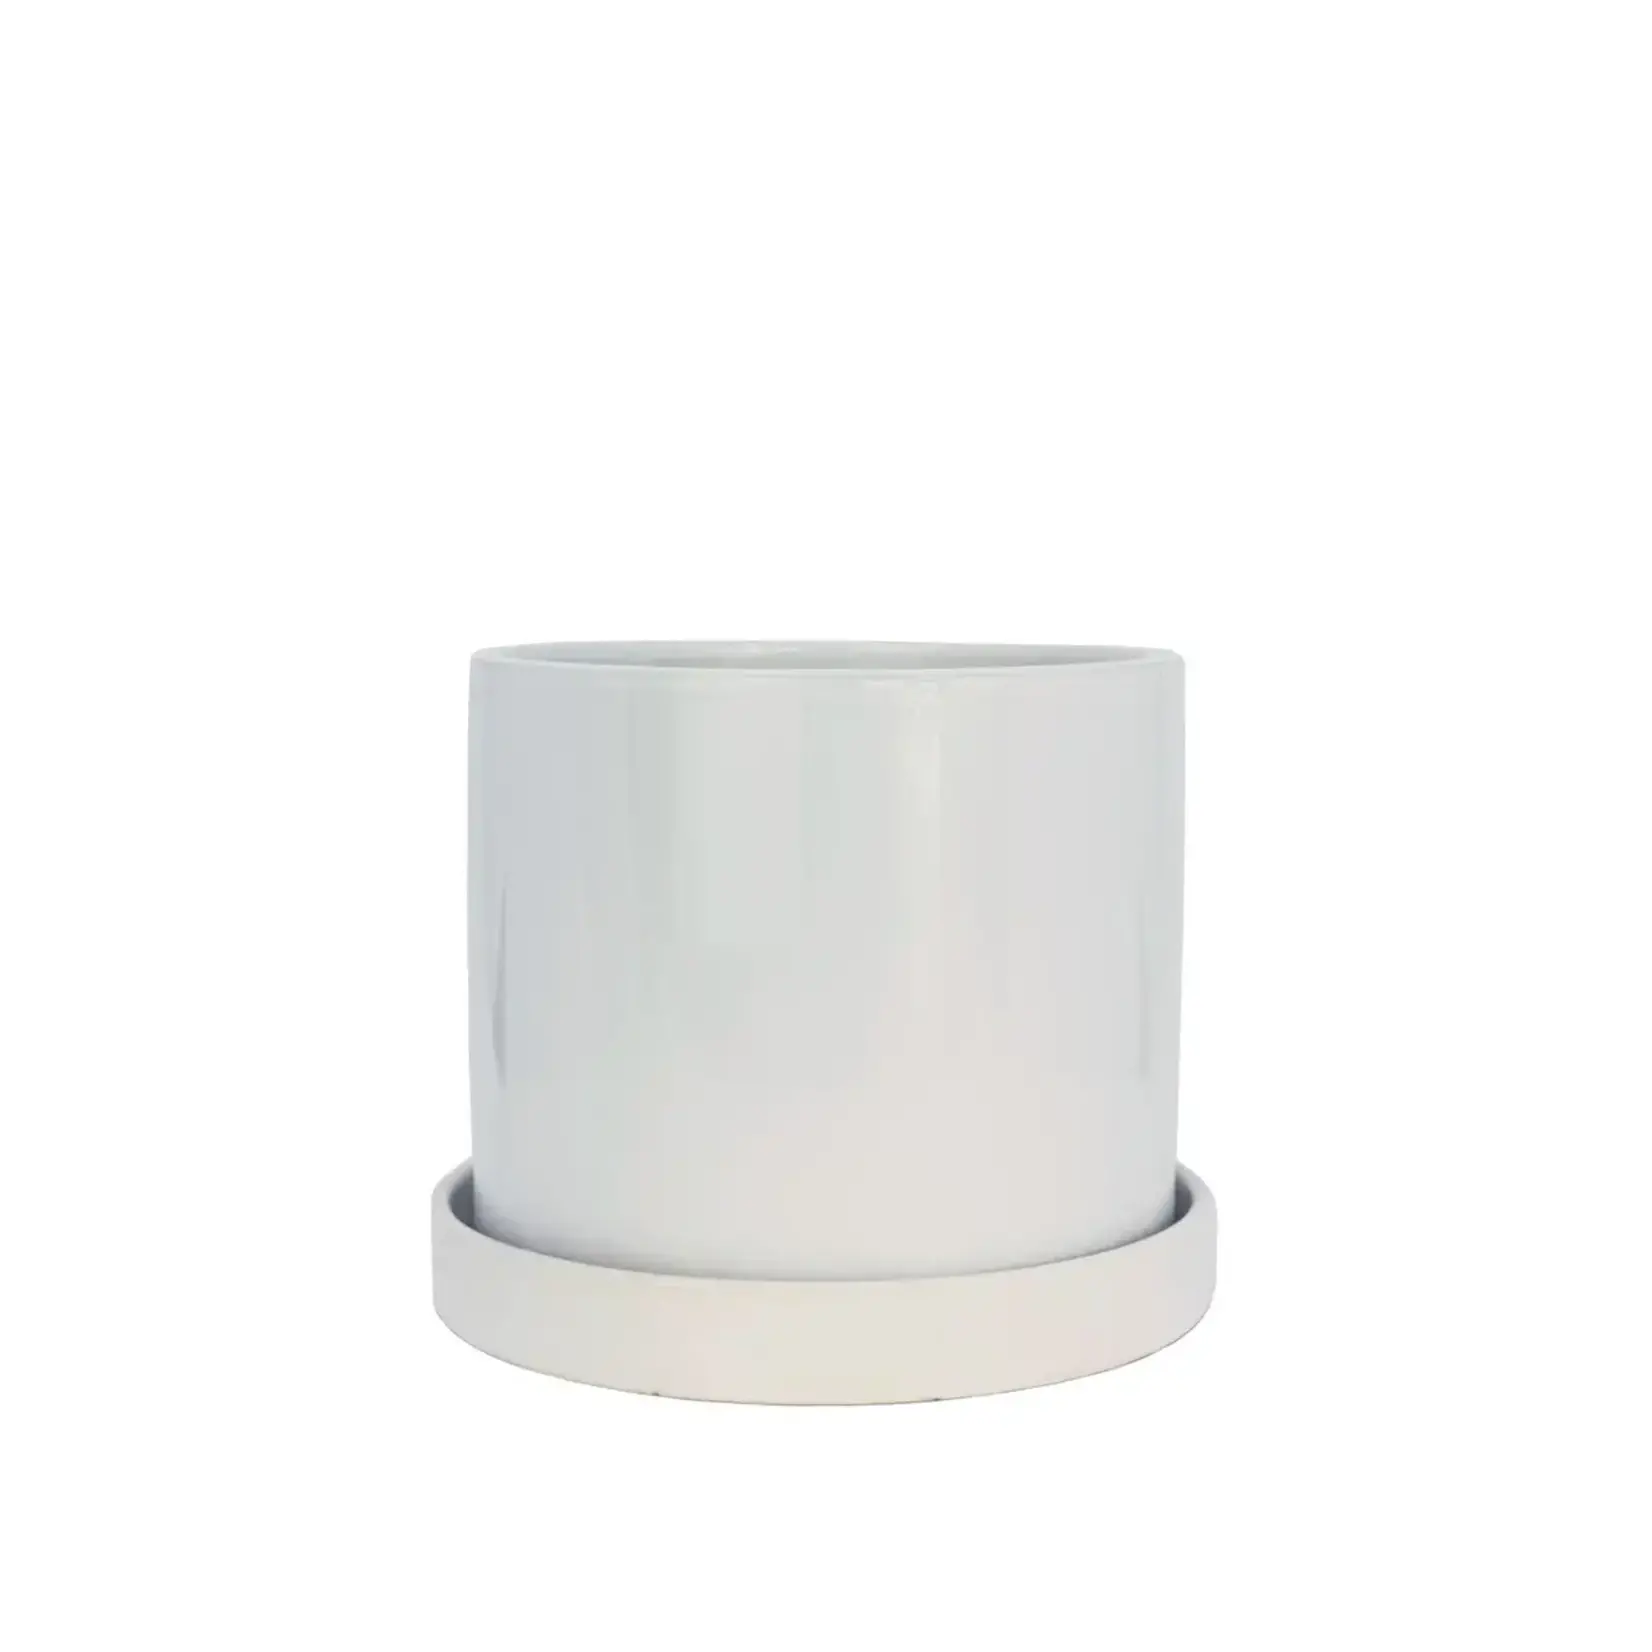 Modus Lifestyle Capri Pot w/saucer - White - 8"x7"